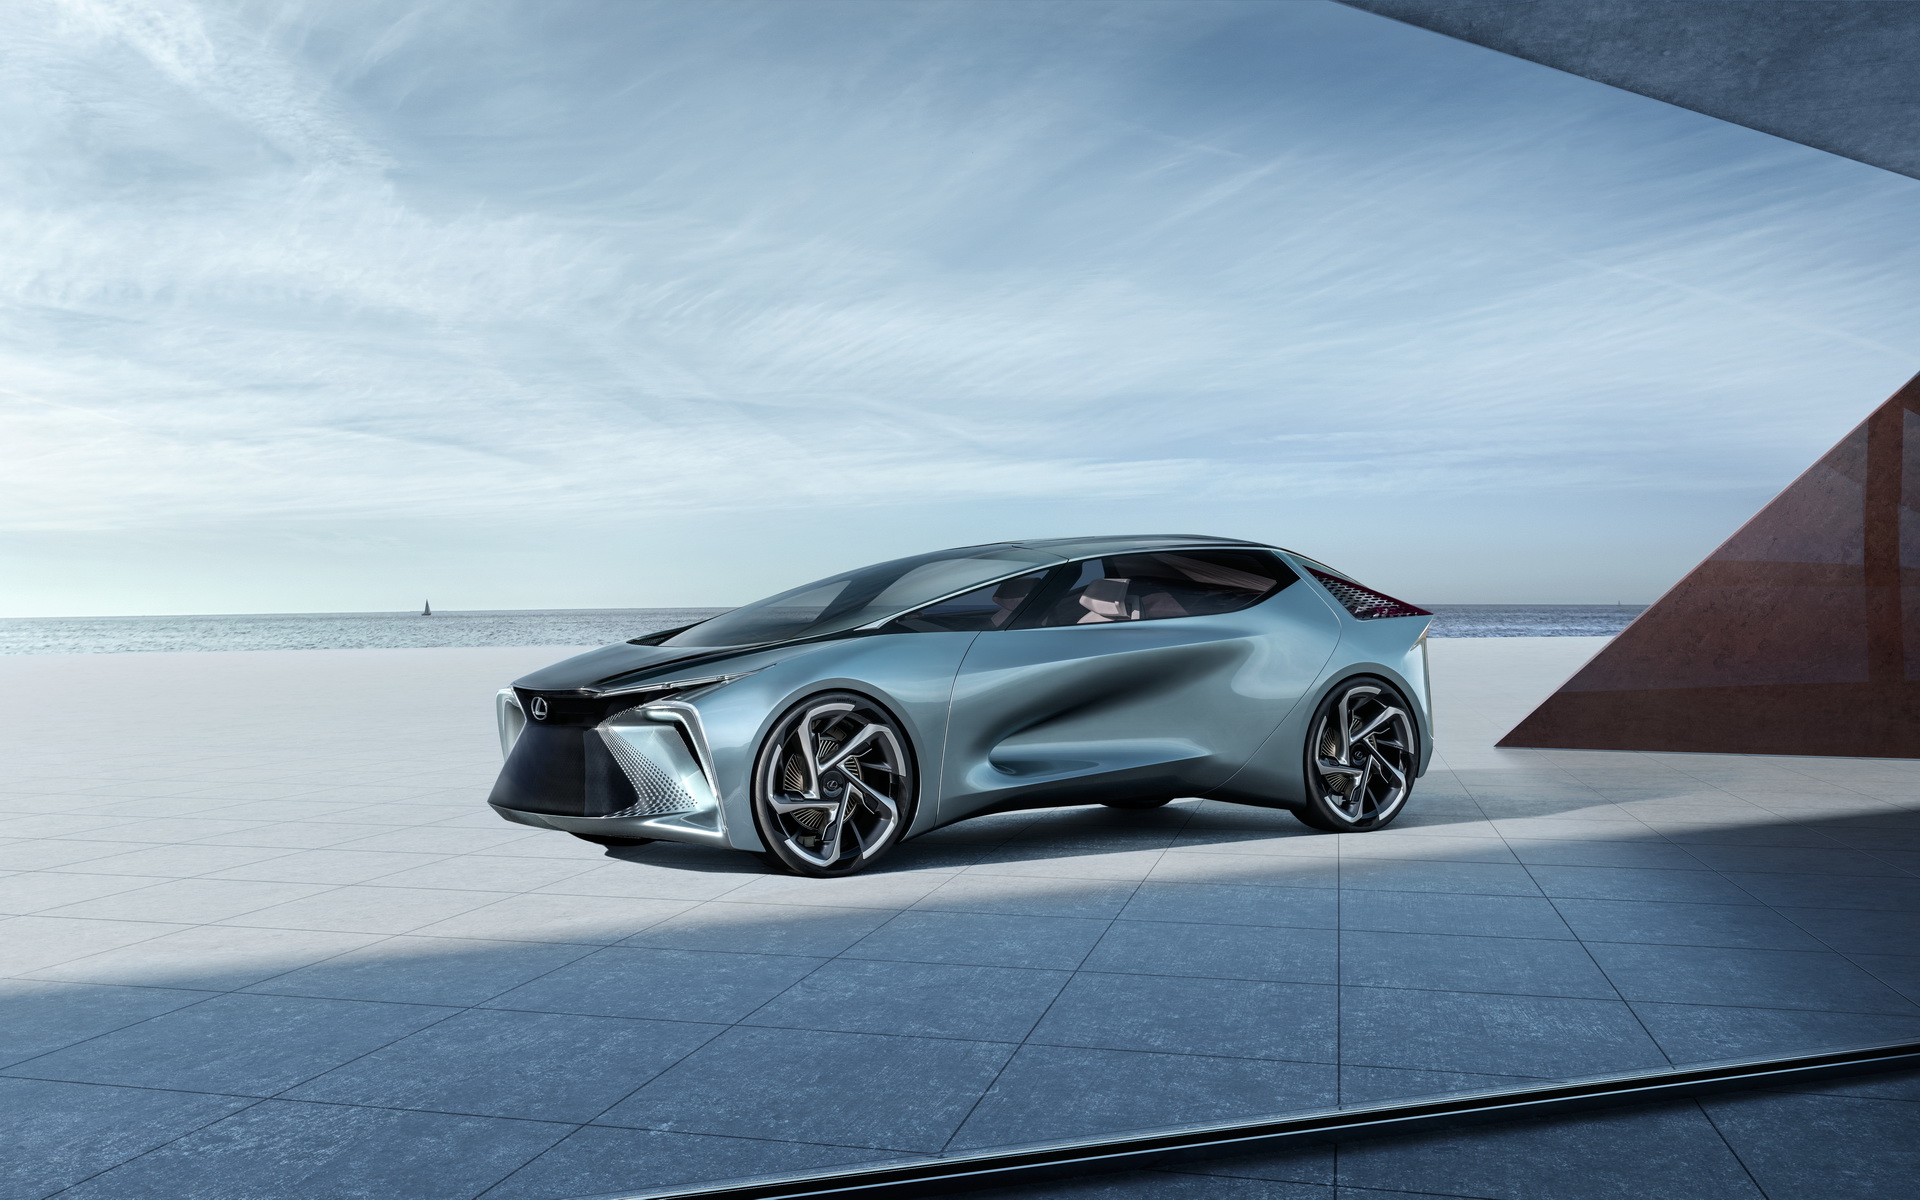 "بالصور" أبرز السيارات الجديدة القادمة في معرض جنيف للسيارات 2020 5